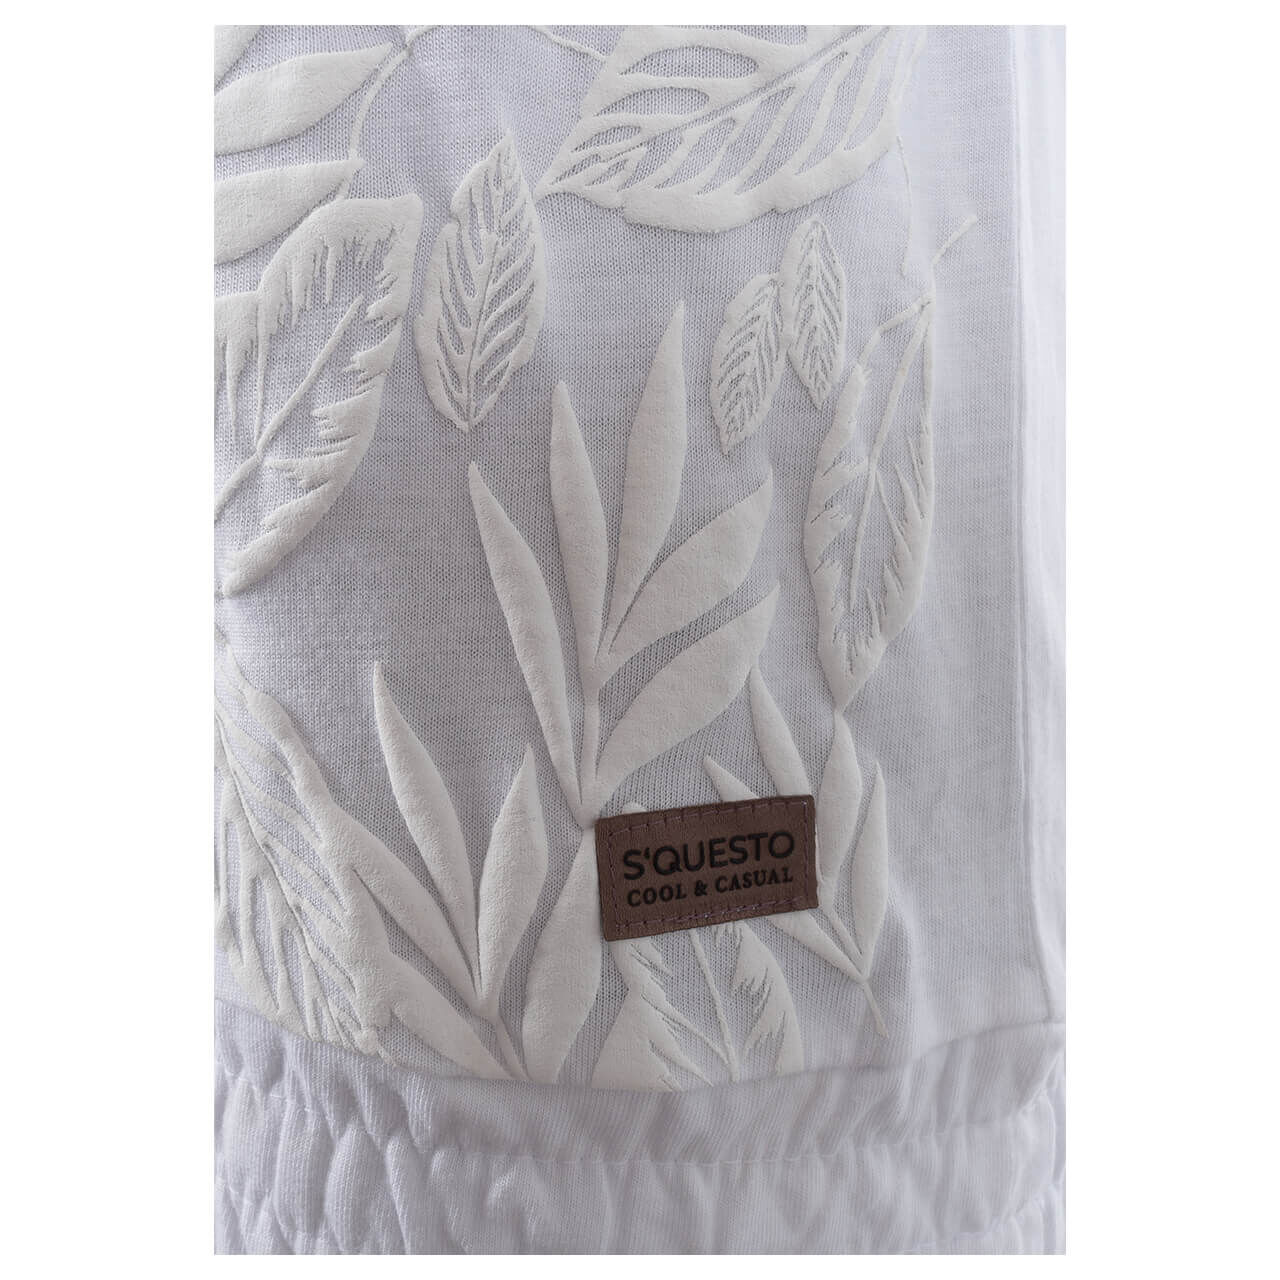 Soquesto Damen T-Shirt shiny white leaf